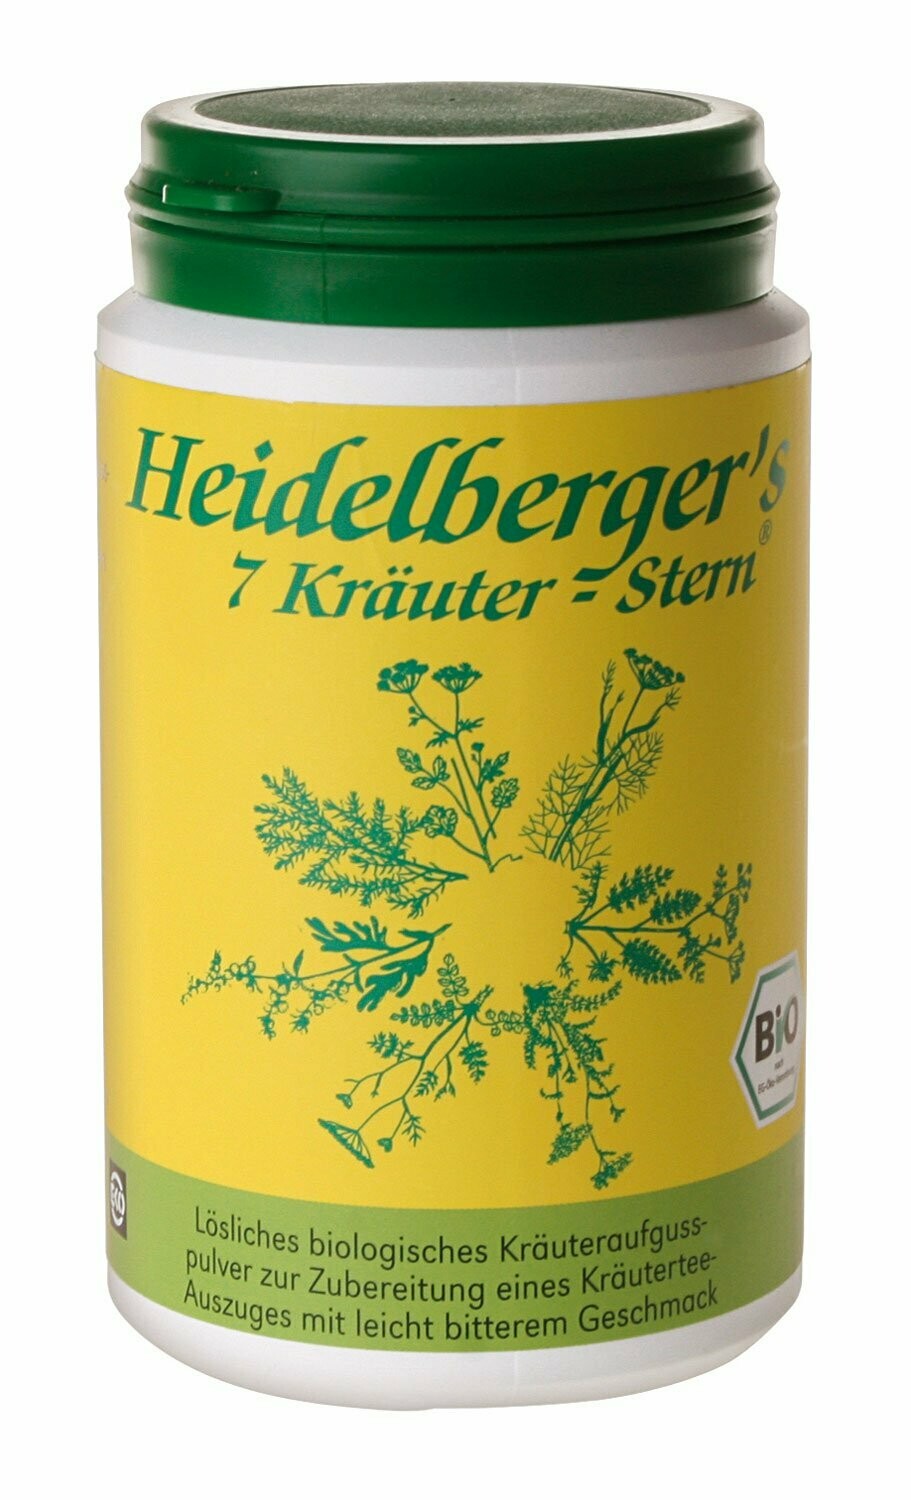 Heidelberger´s 7 Kräuter-Stern 250 g, Pulver,
das Original!